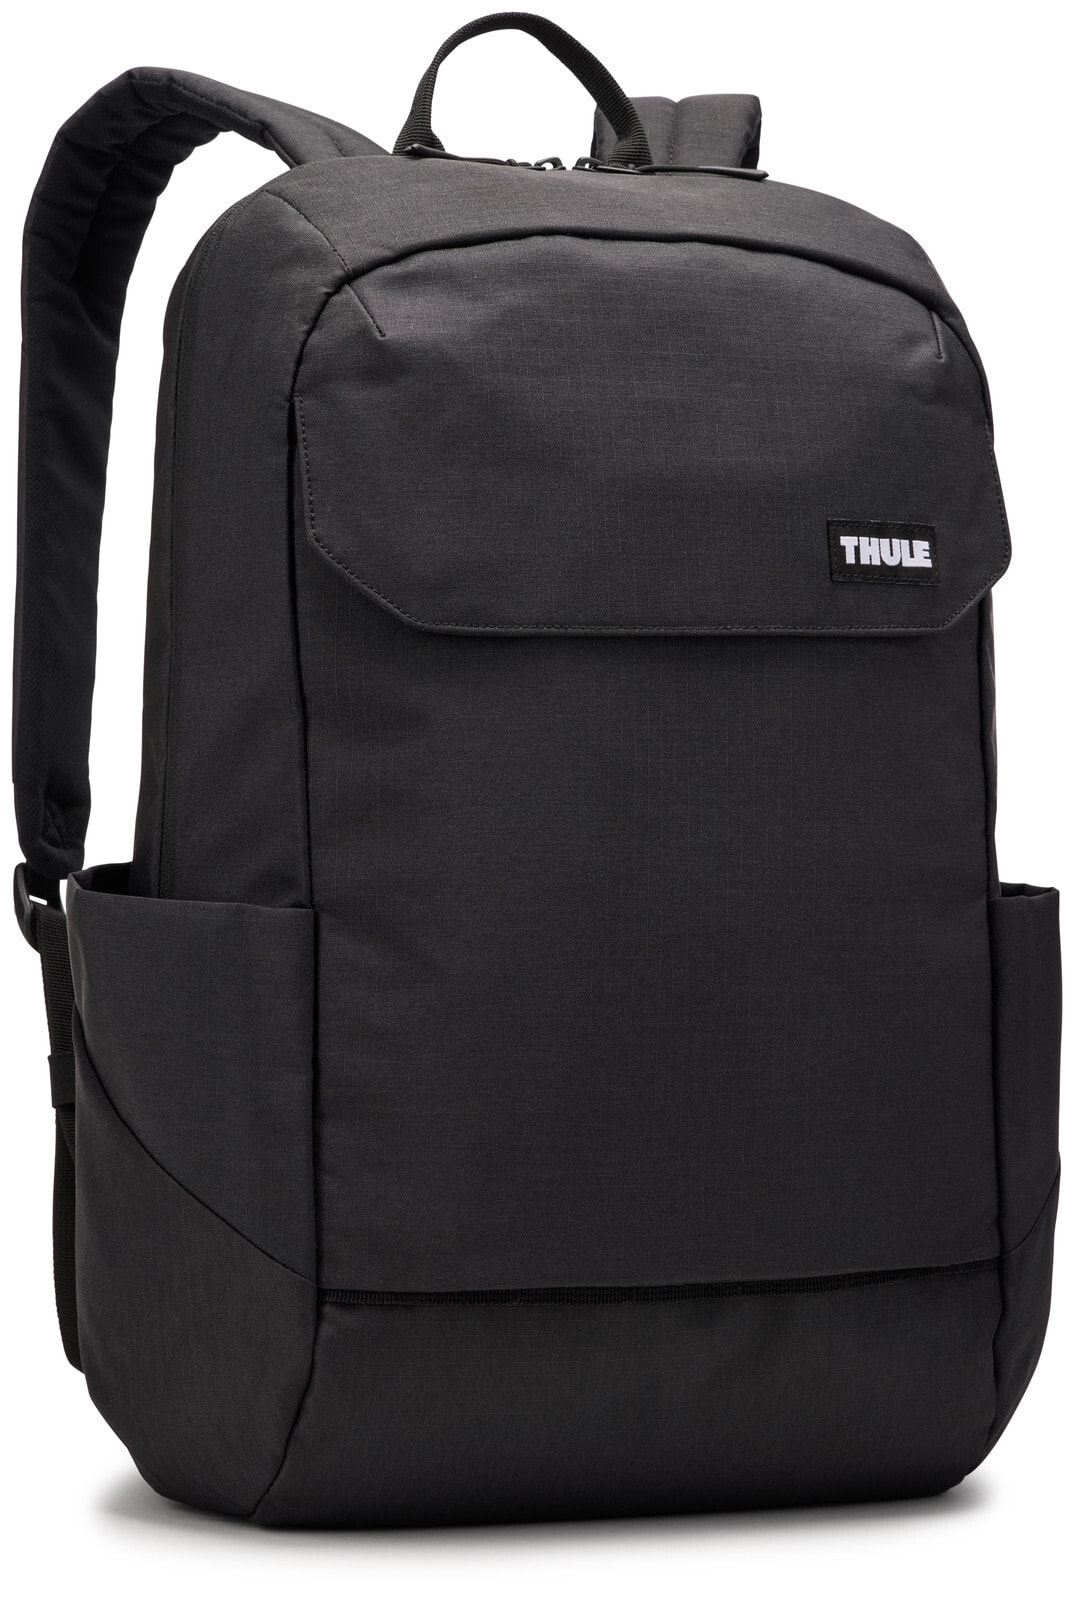 Thule Lithos TLBP216 - Black рюкзак Повседневный рюкзак Черный Полиэстер 3204835